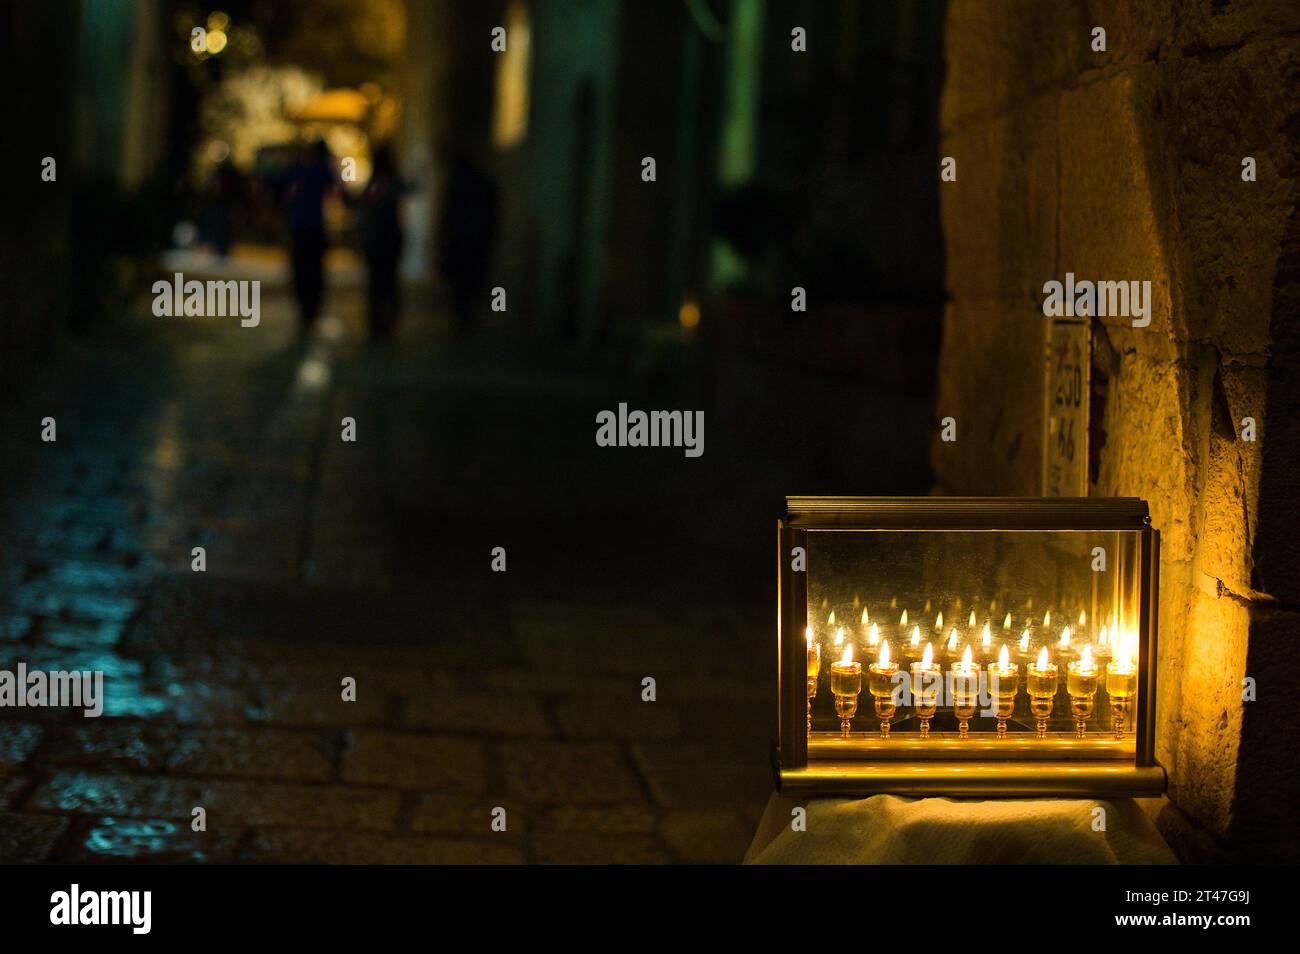 Le fiale di vetro contengono olio e stoppini brucianti in una menorah che si illumina in una strada di Gerusalemme l'ottava notte del festival ebraico di Hanukkah. Foto Stock